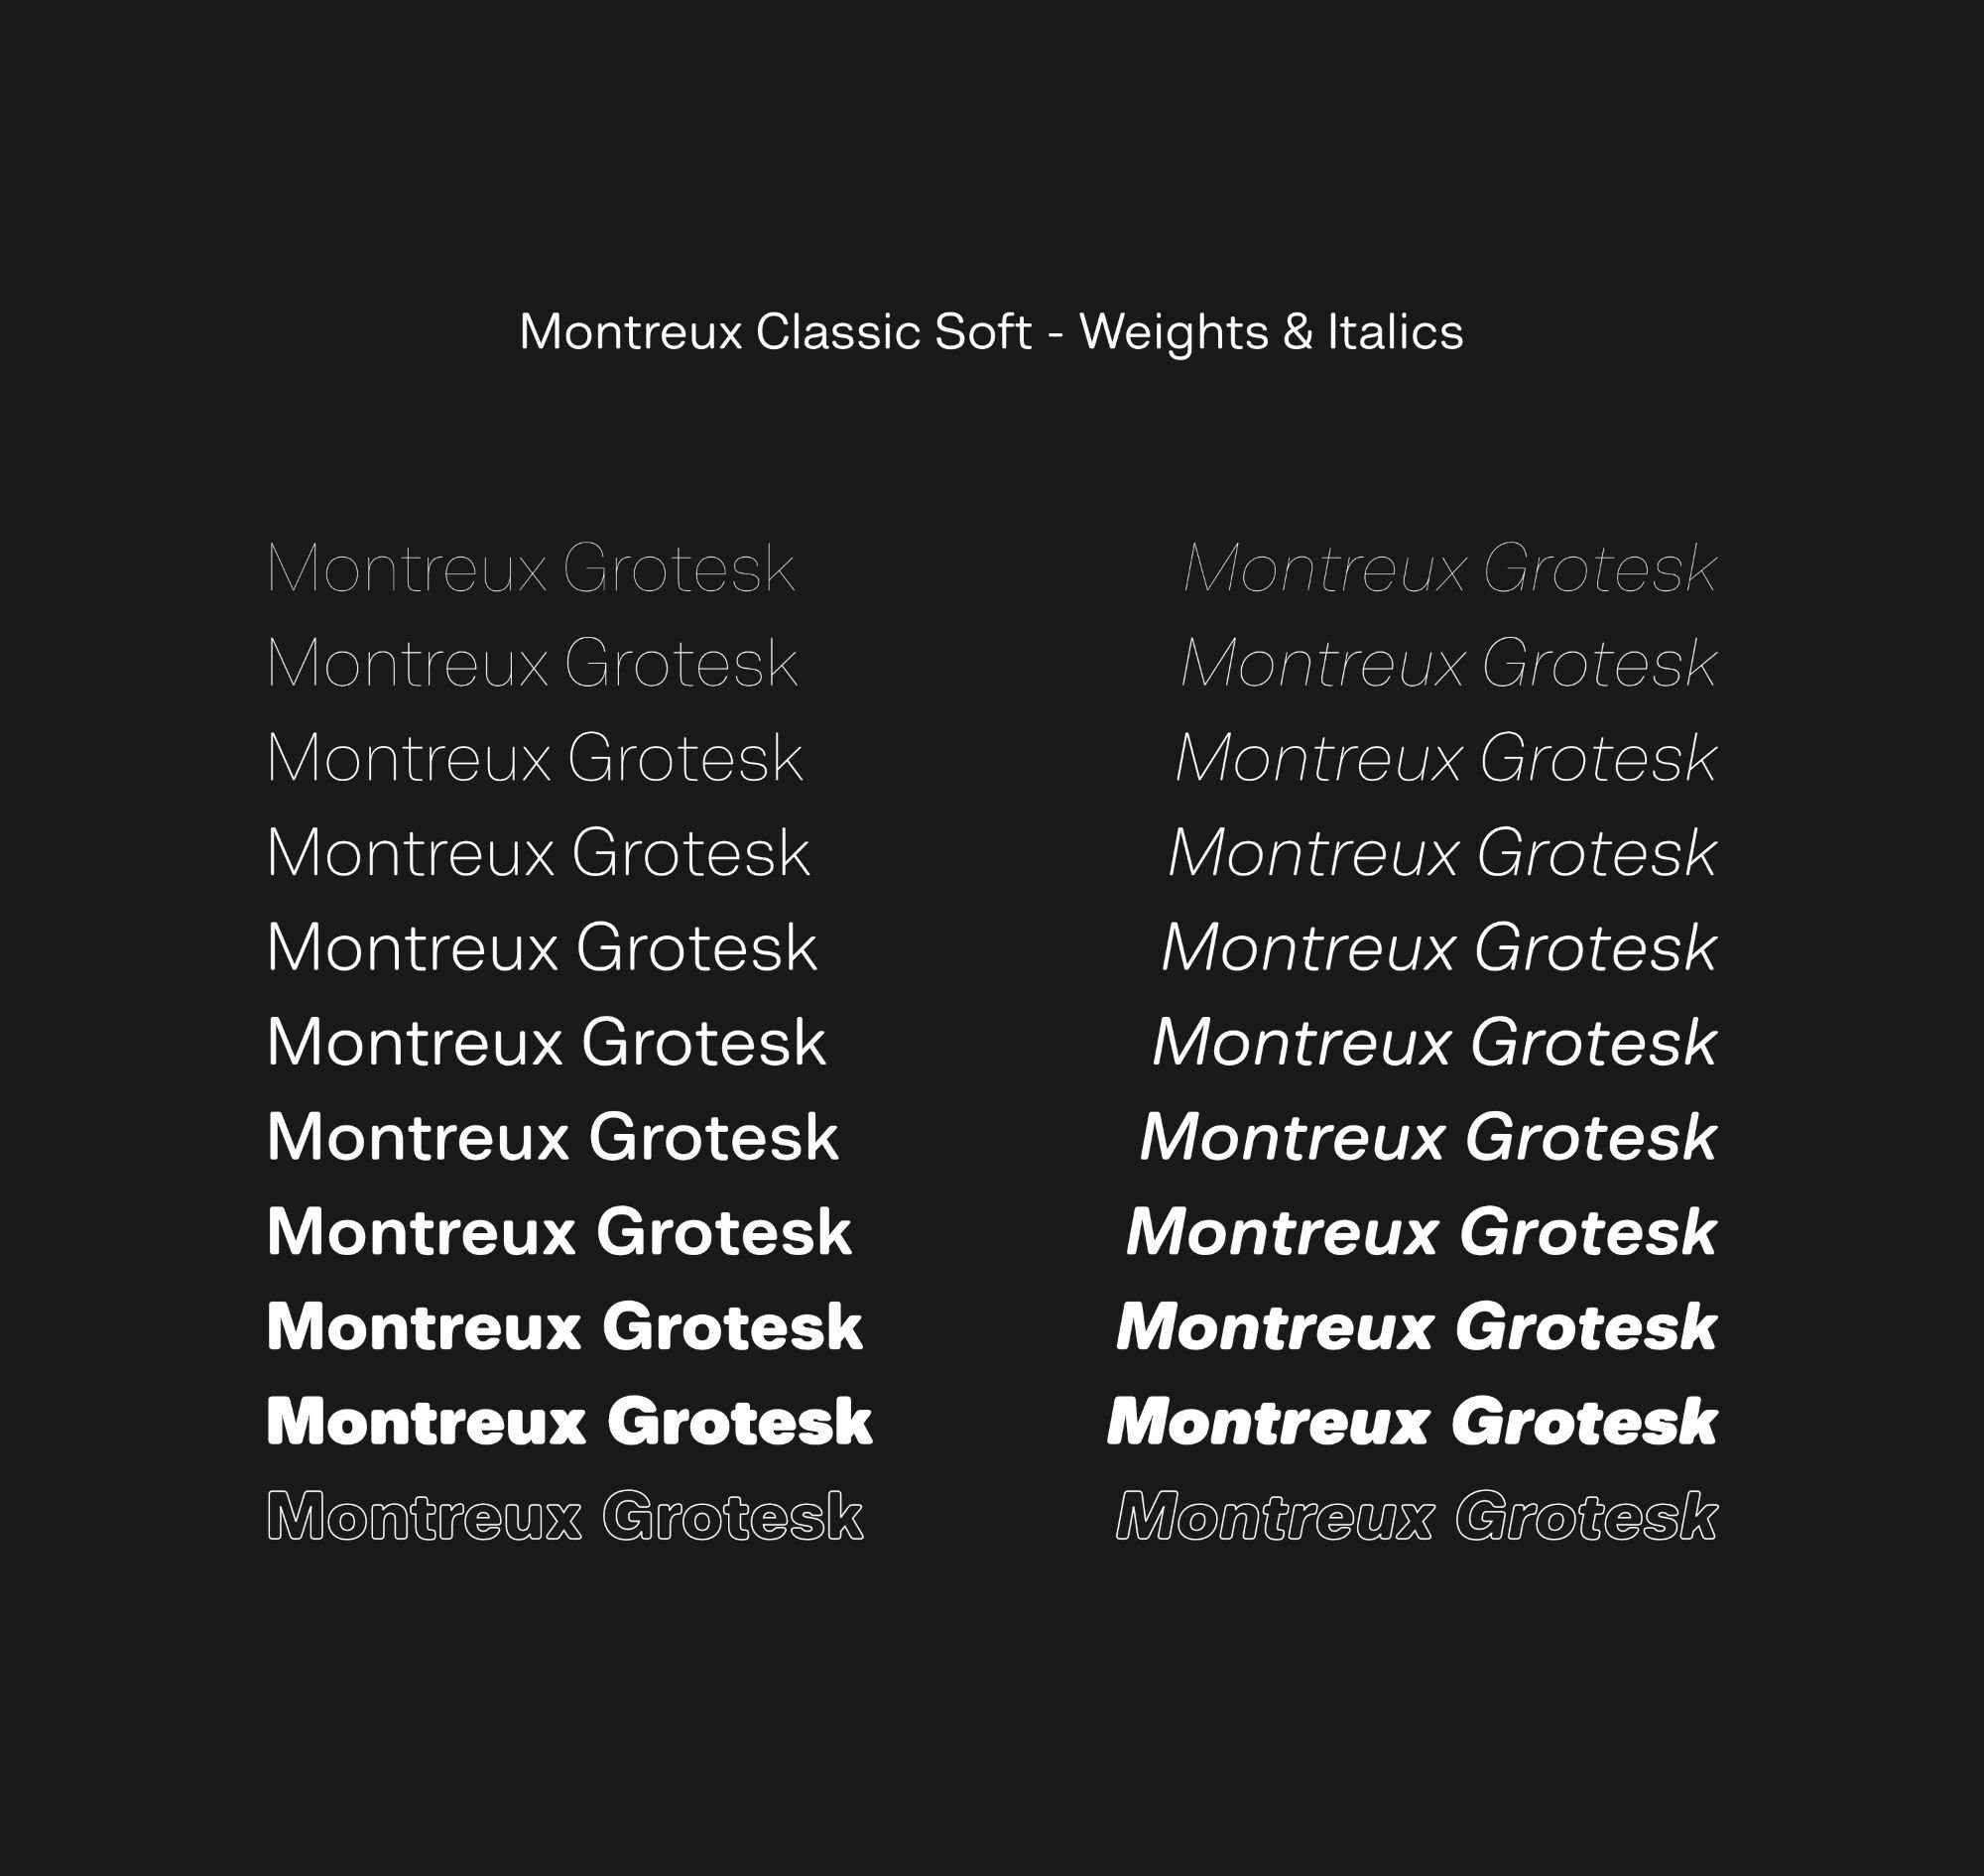 Montreux Grotesk